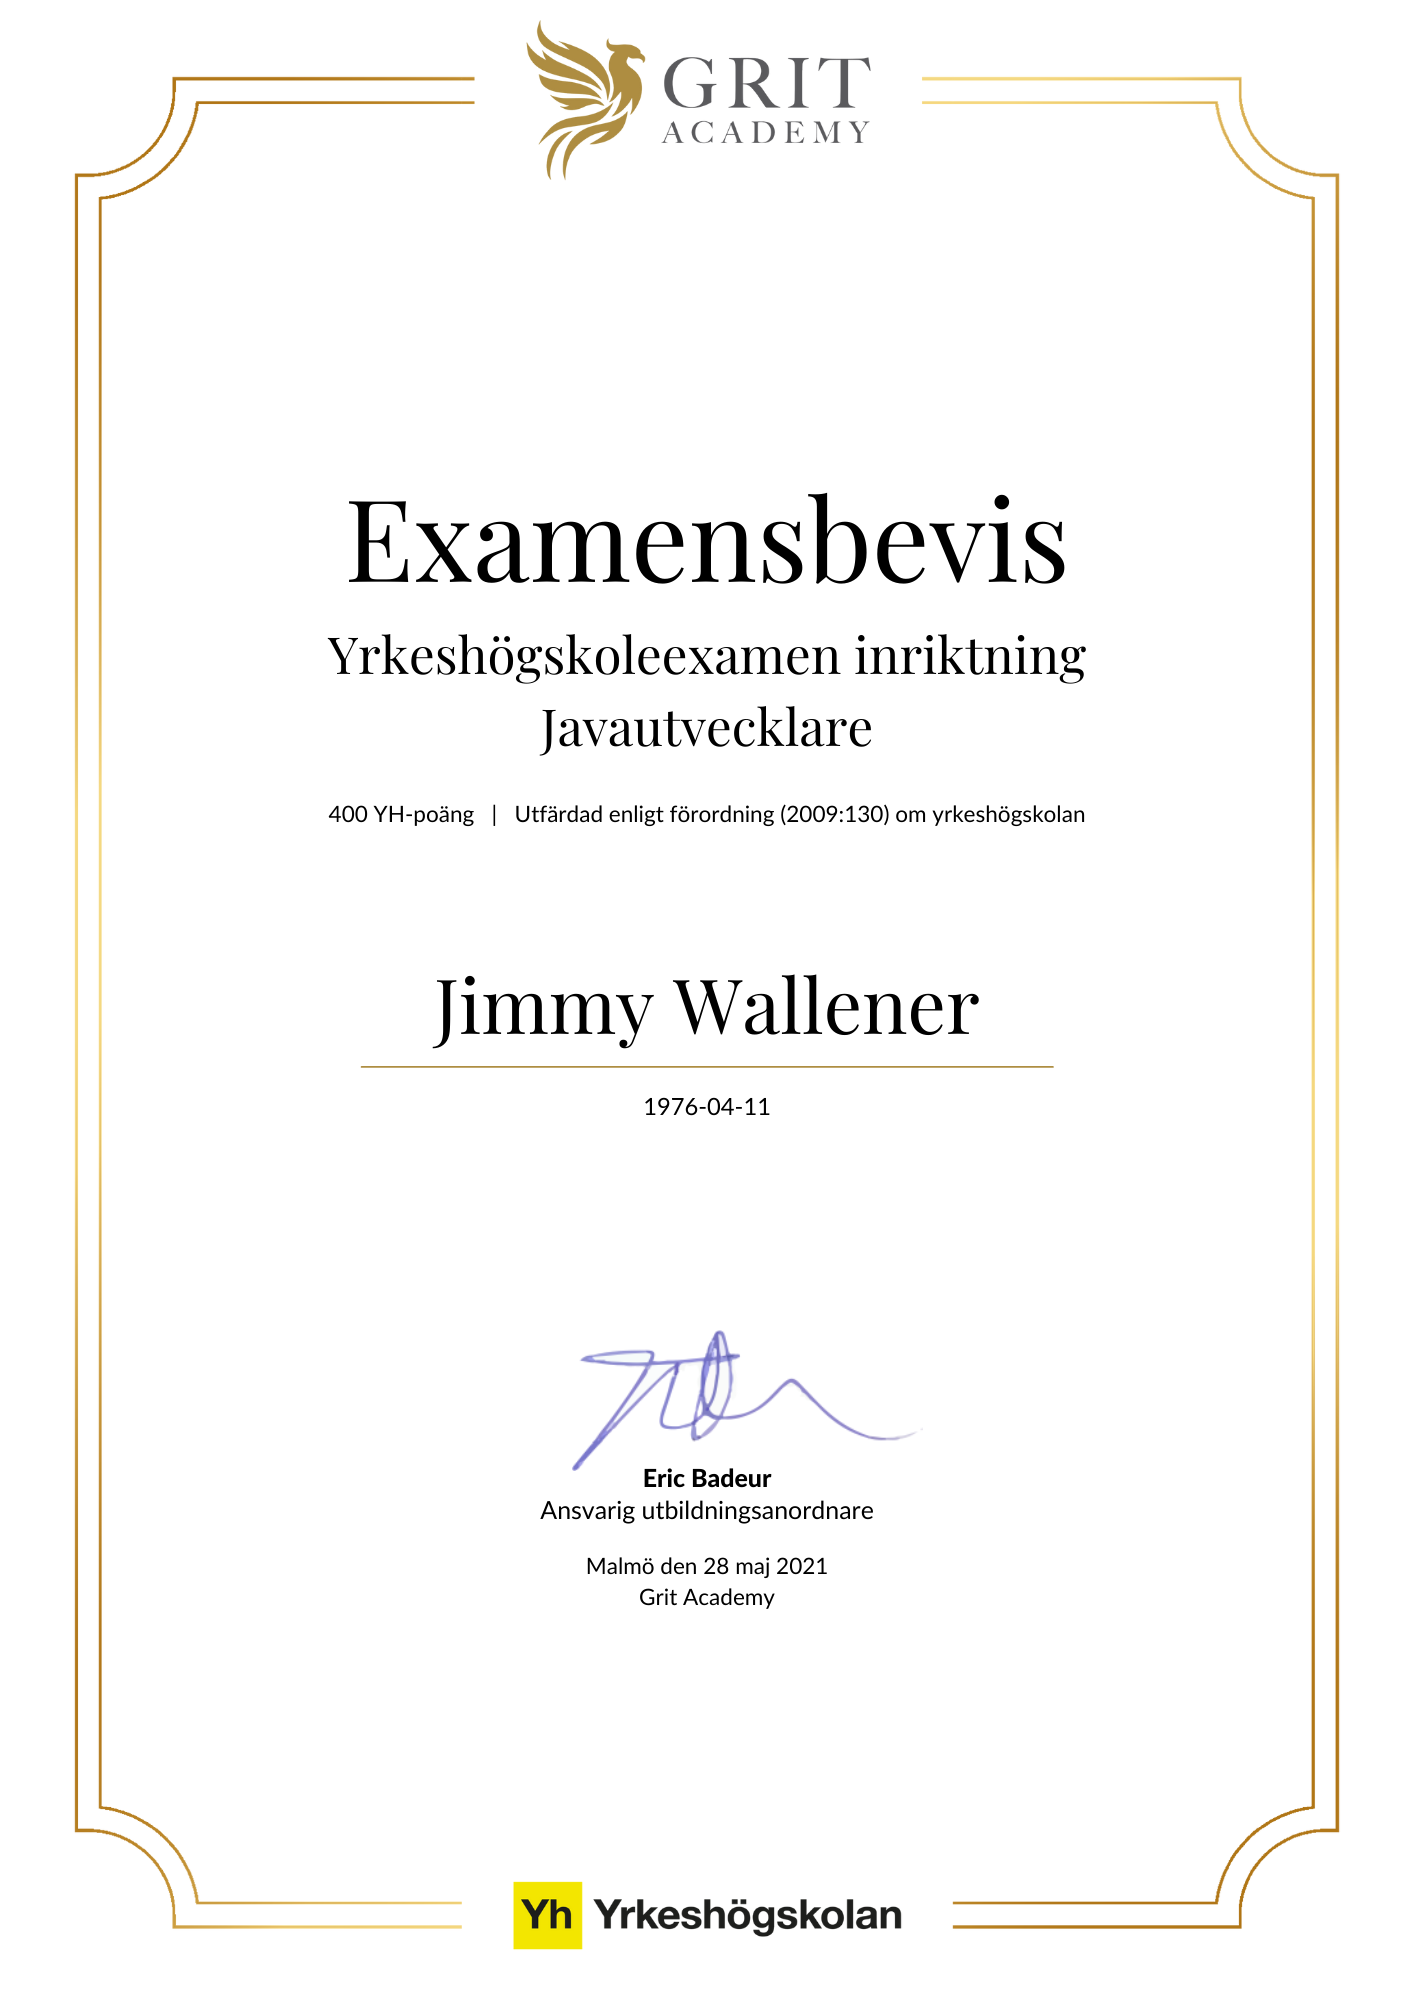 Examensbevis Jimmy Wallener - 1